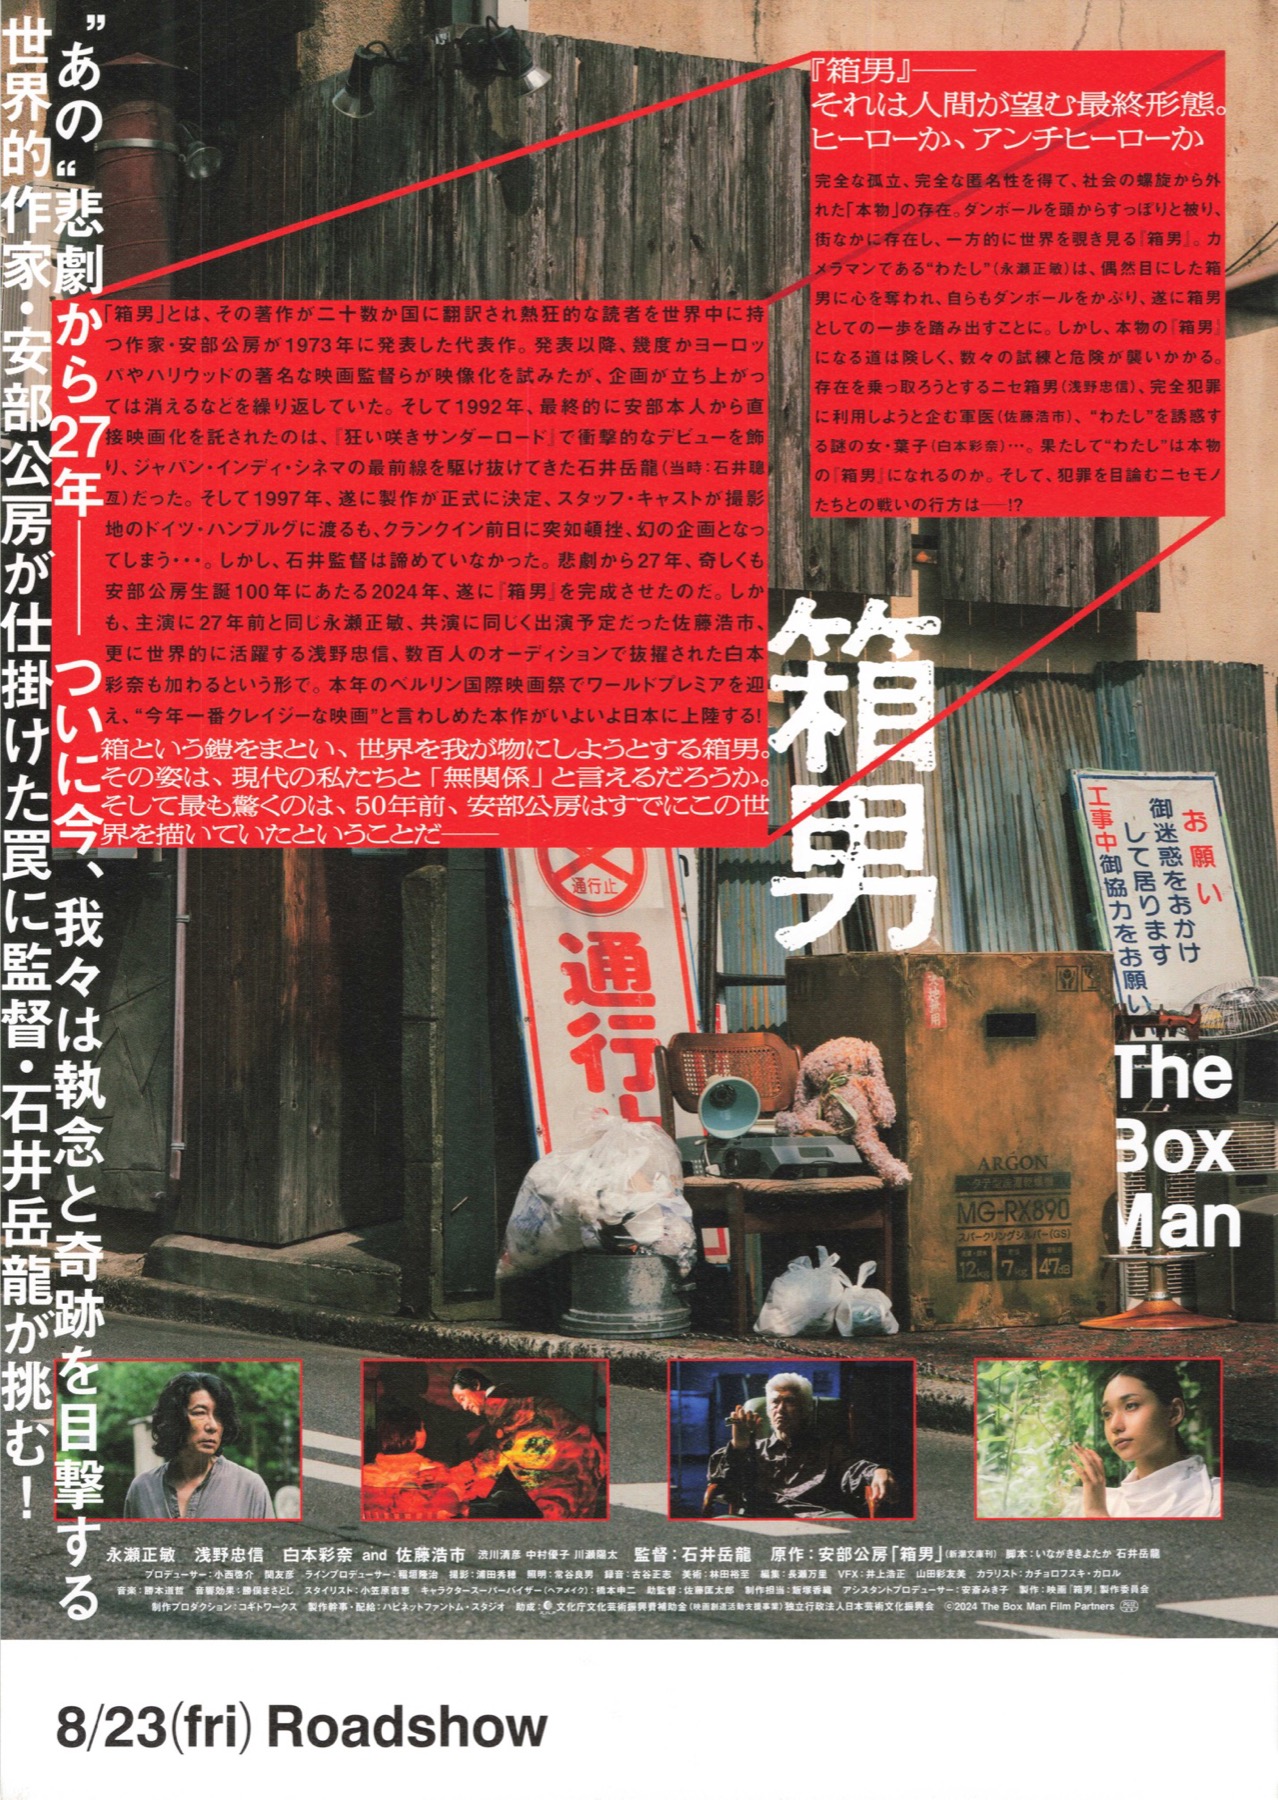 箱男 THE BOX MAN